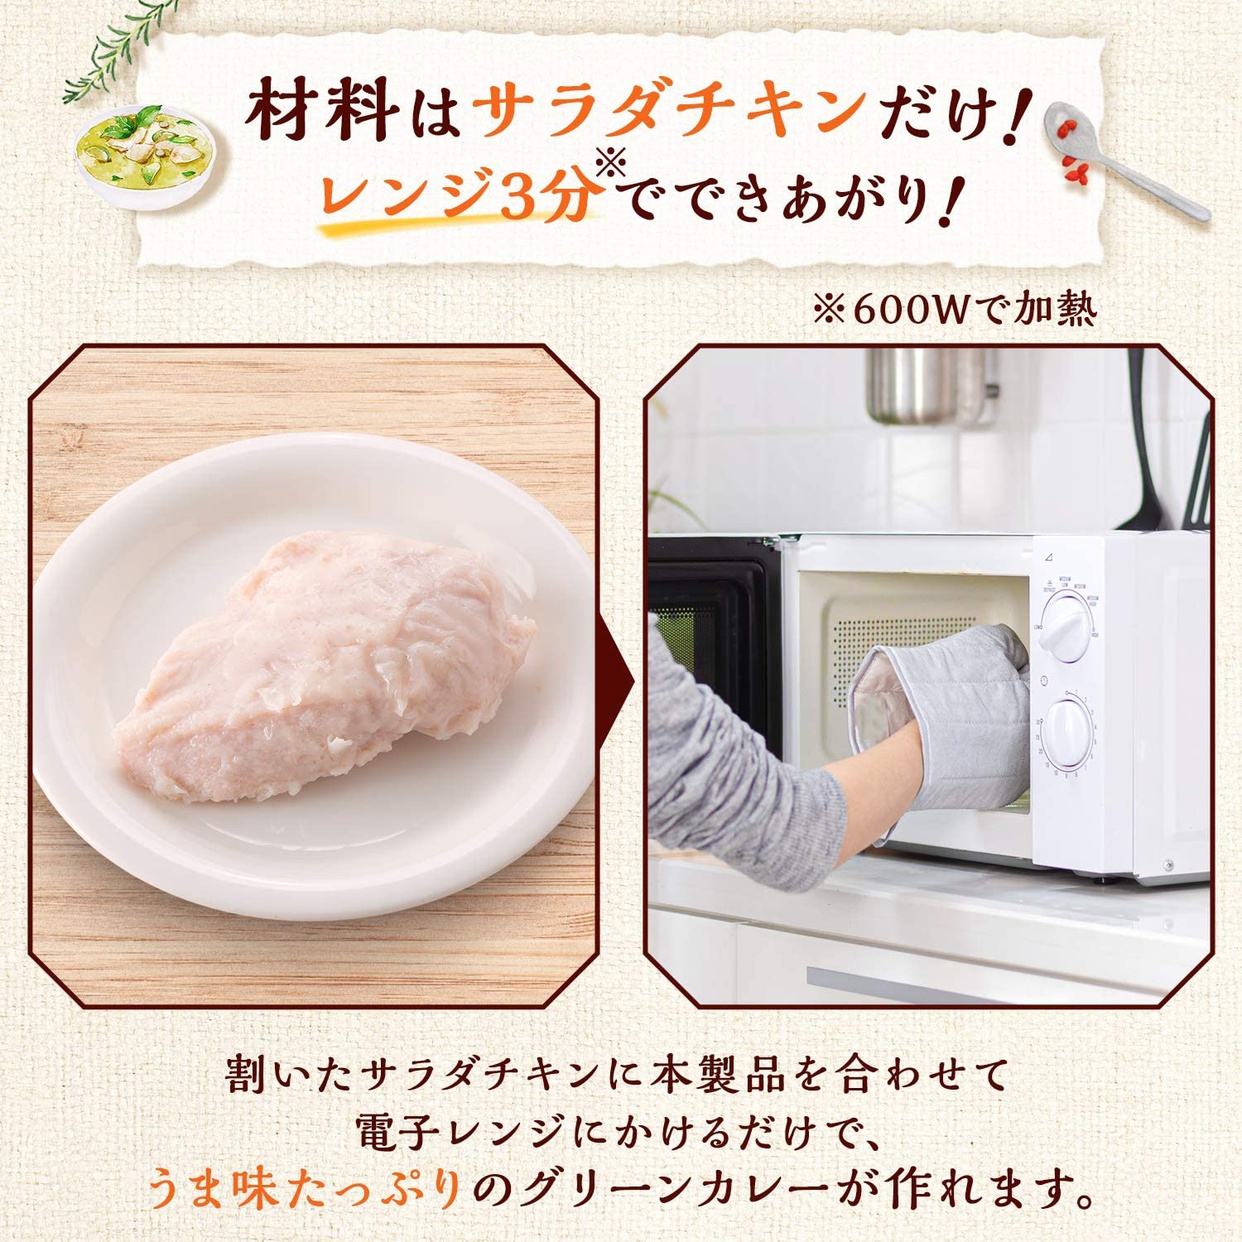 味の素(AJINOMOTO) レンチンクック グリーンカレーの商品画像サムネ4 